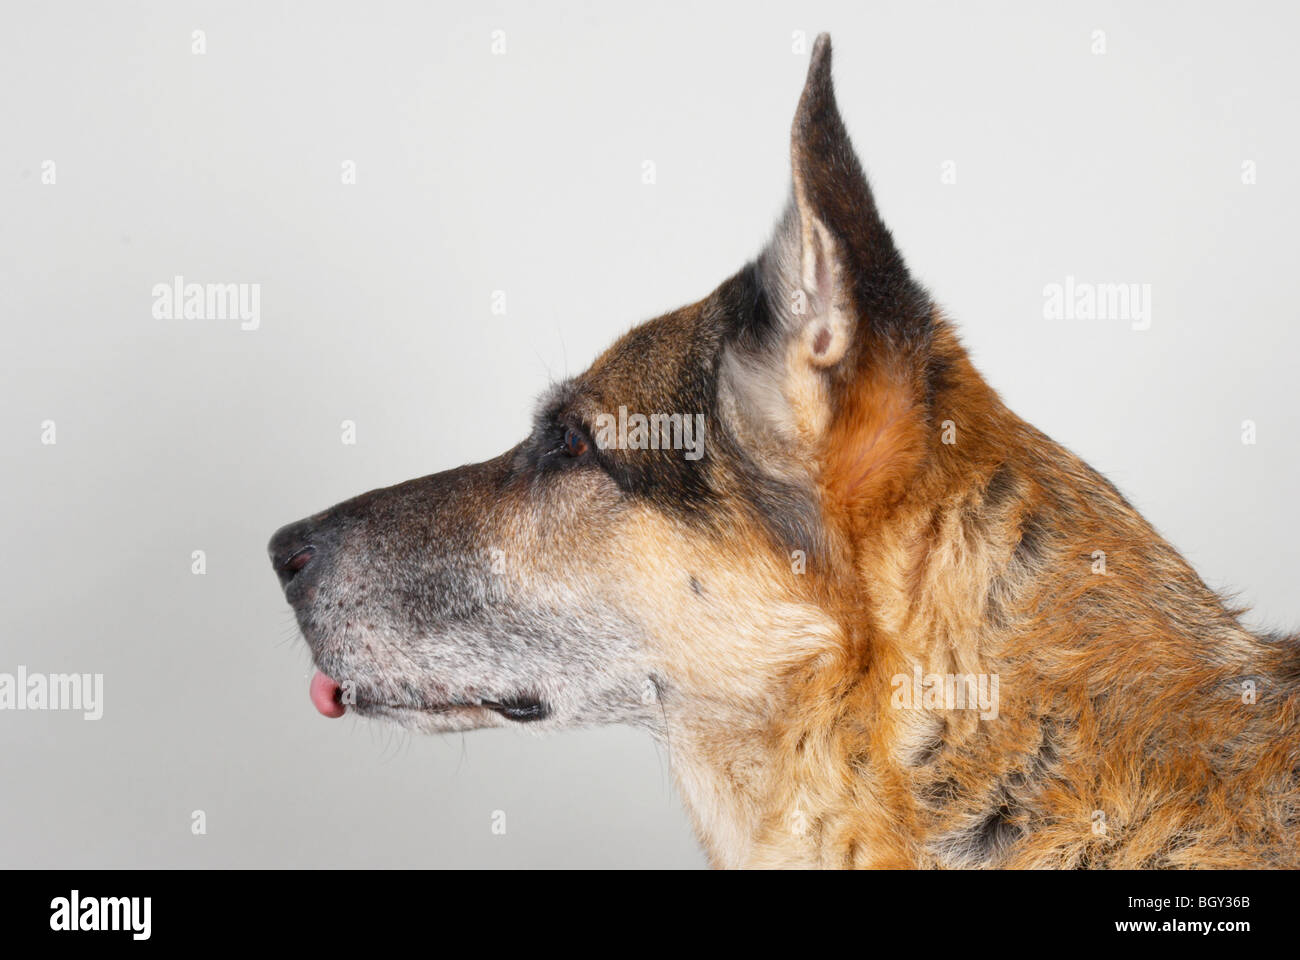 German shepherd dog / Alsatian Stock Photo